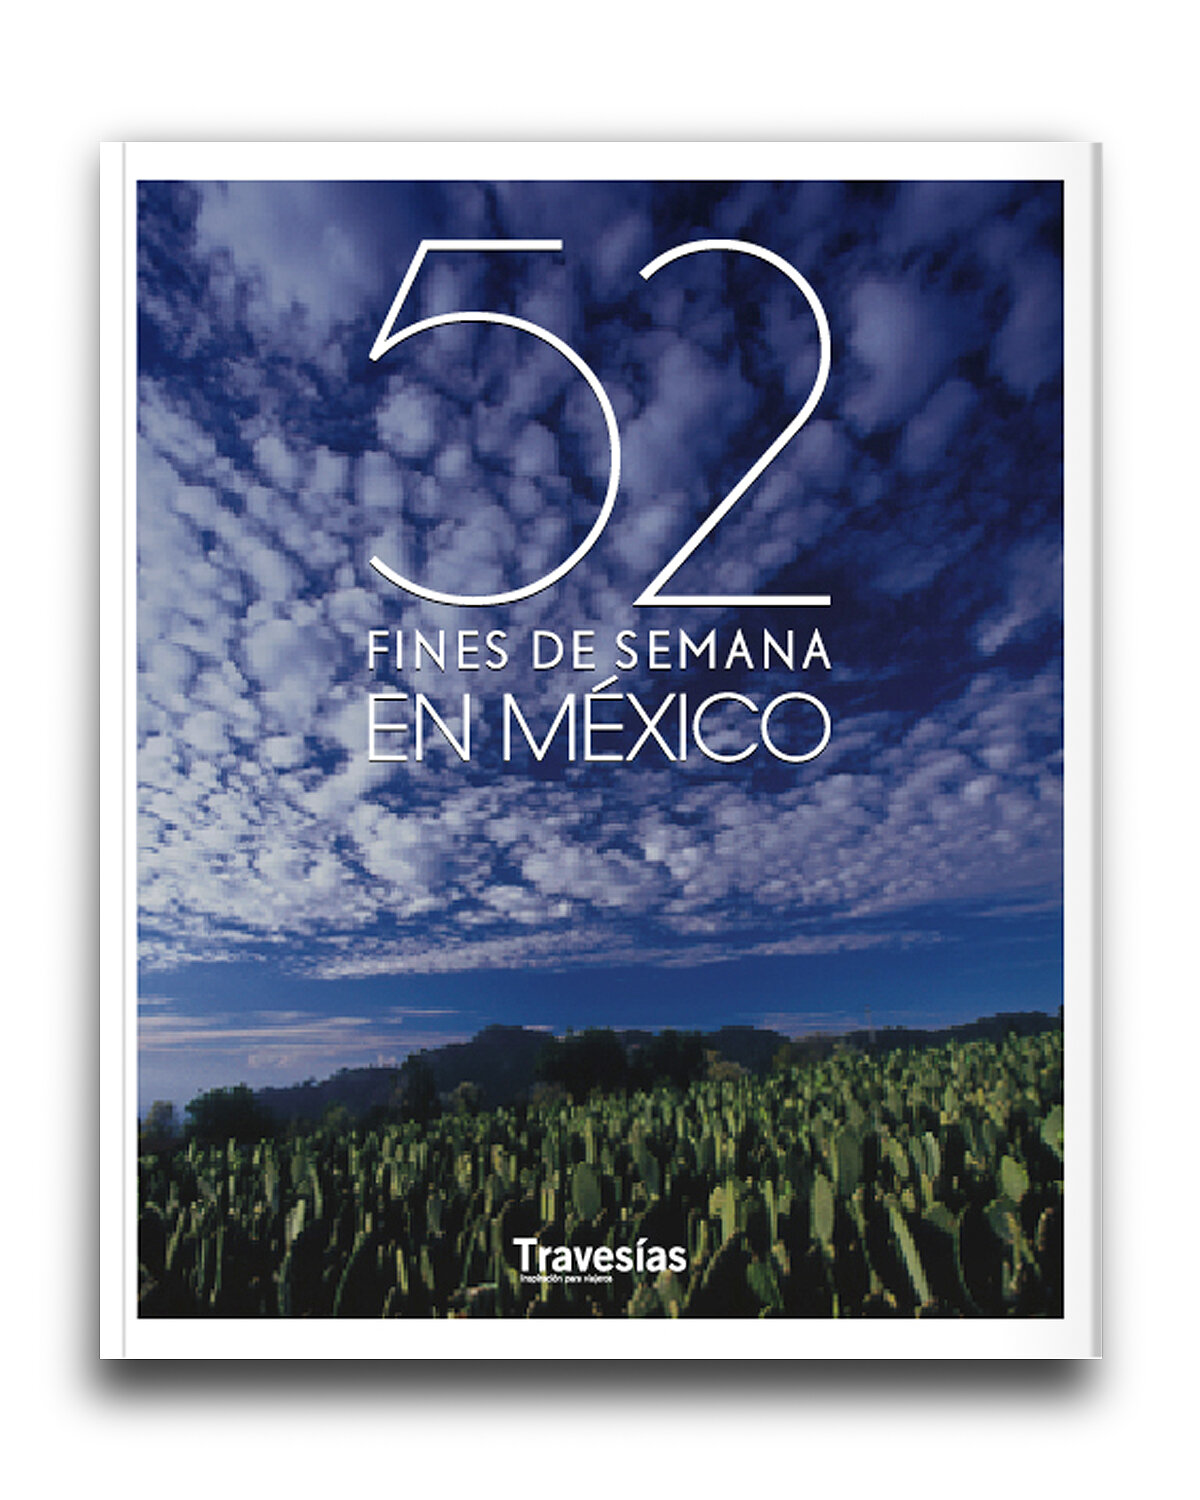 52 fines de semana en México